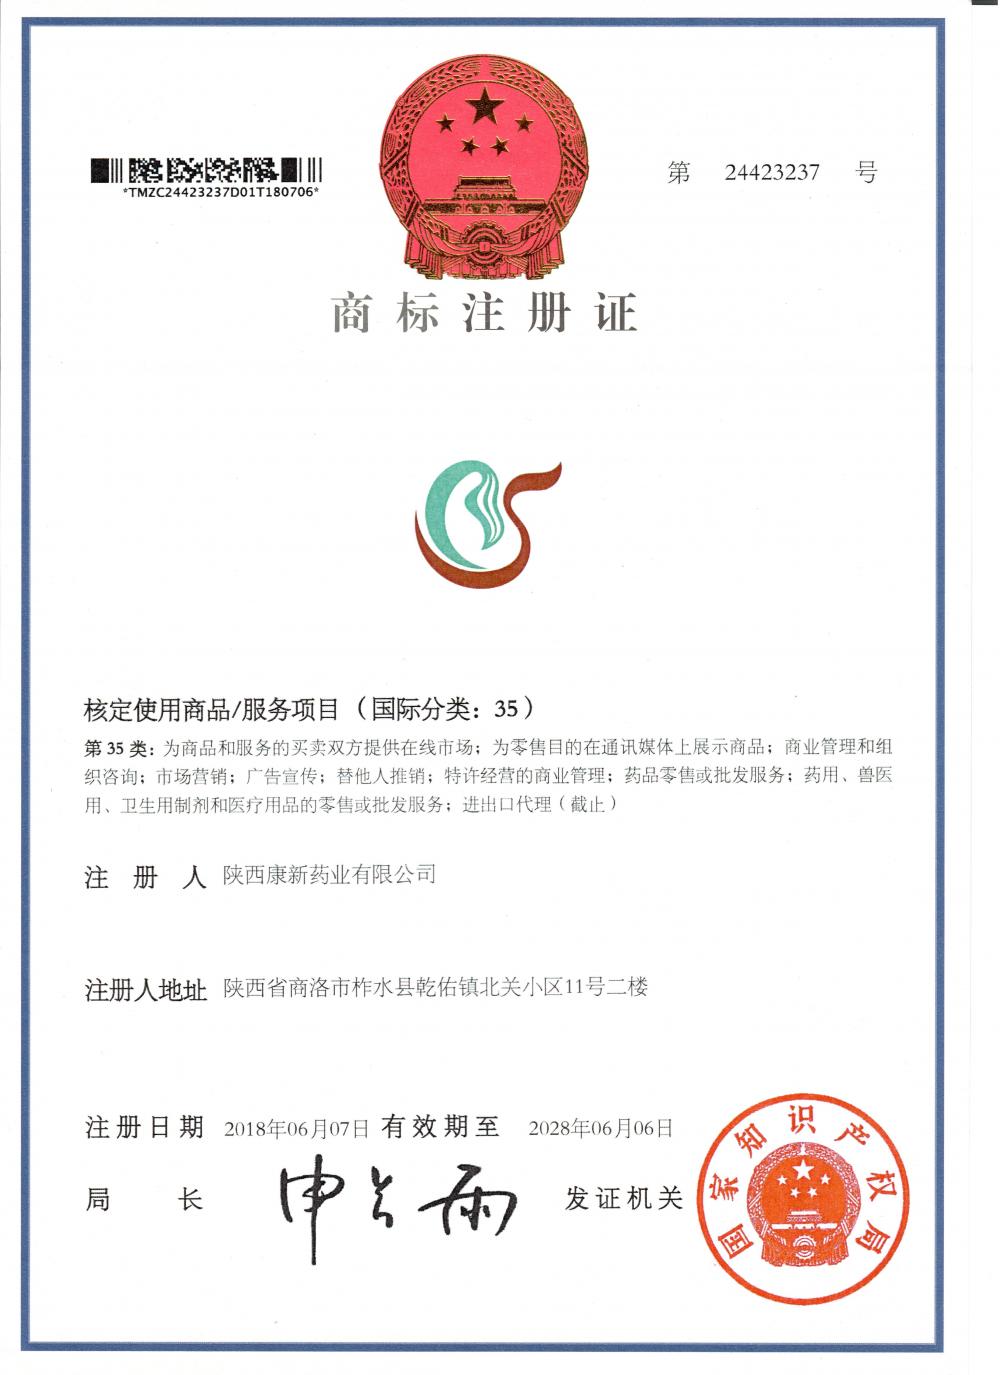 Shaanxi KangNew Pharmaceutical Co., Ltd.